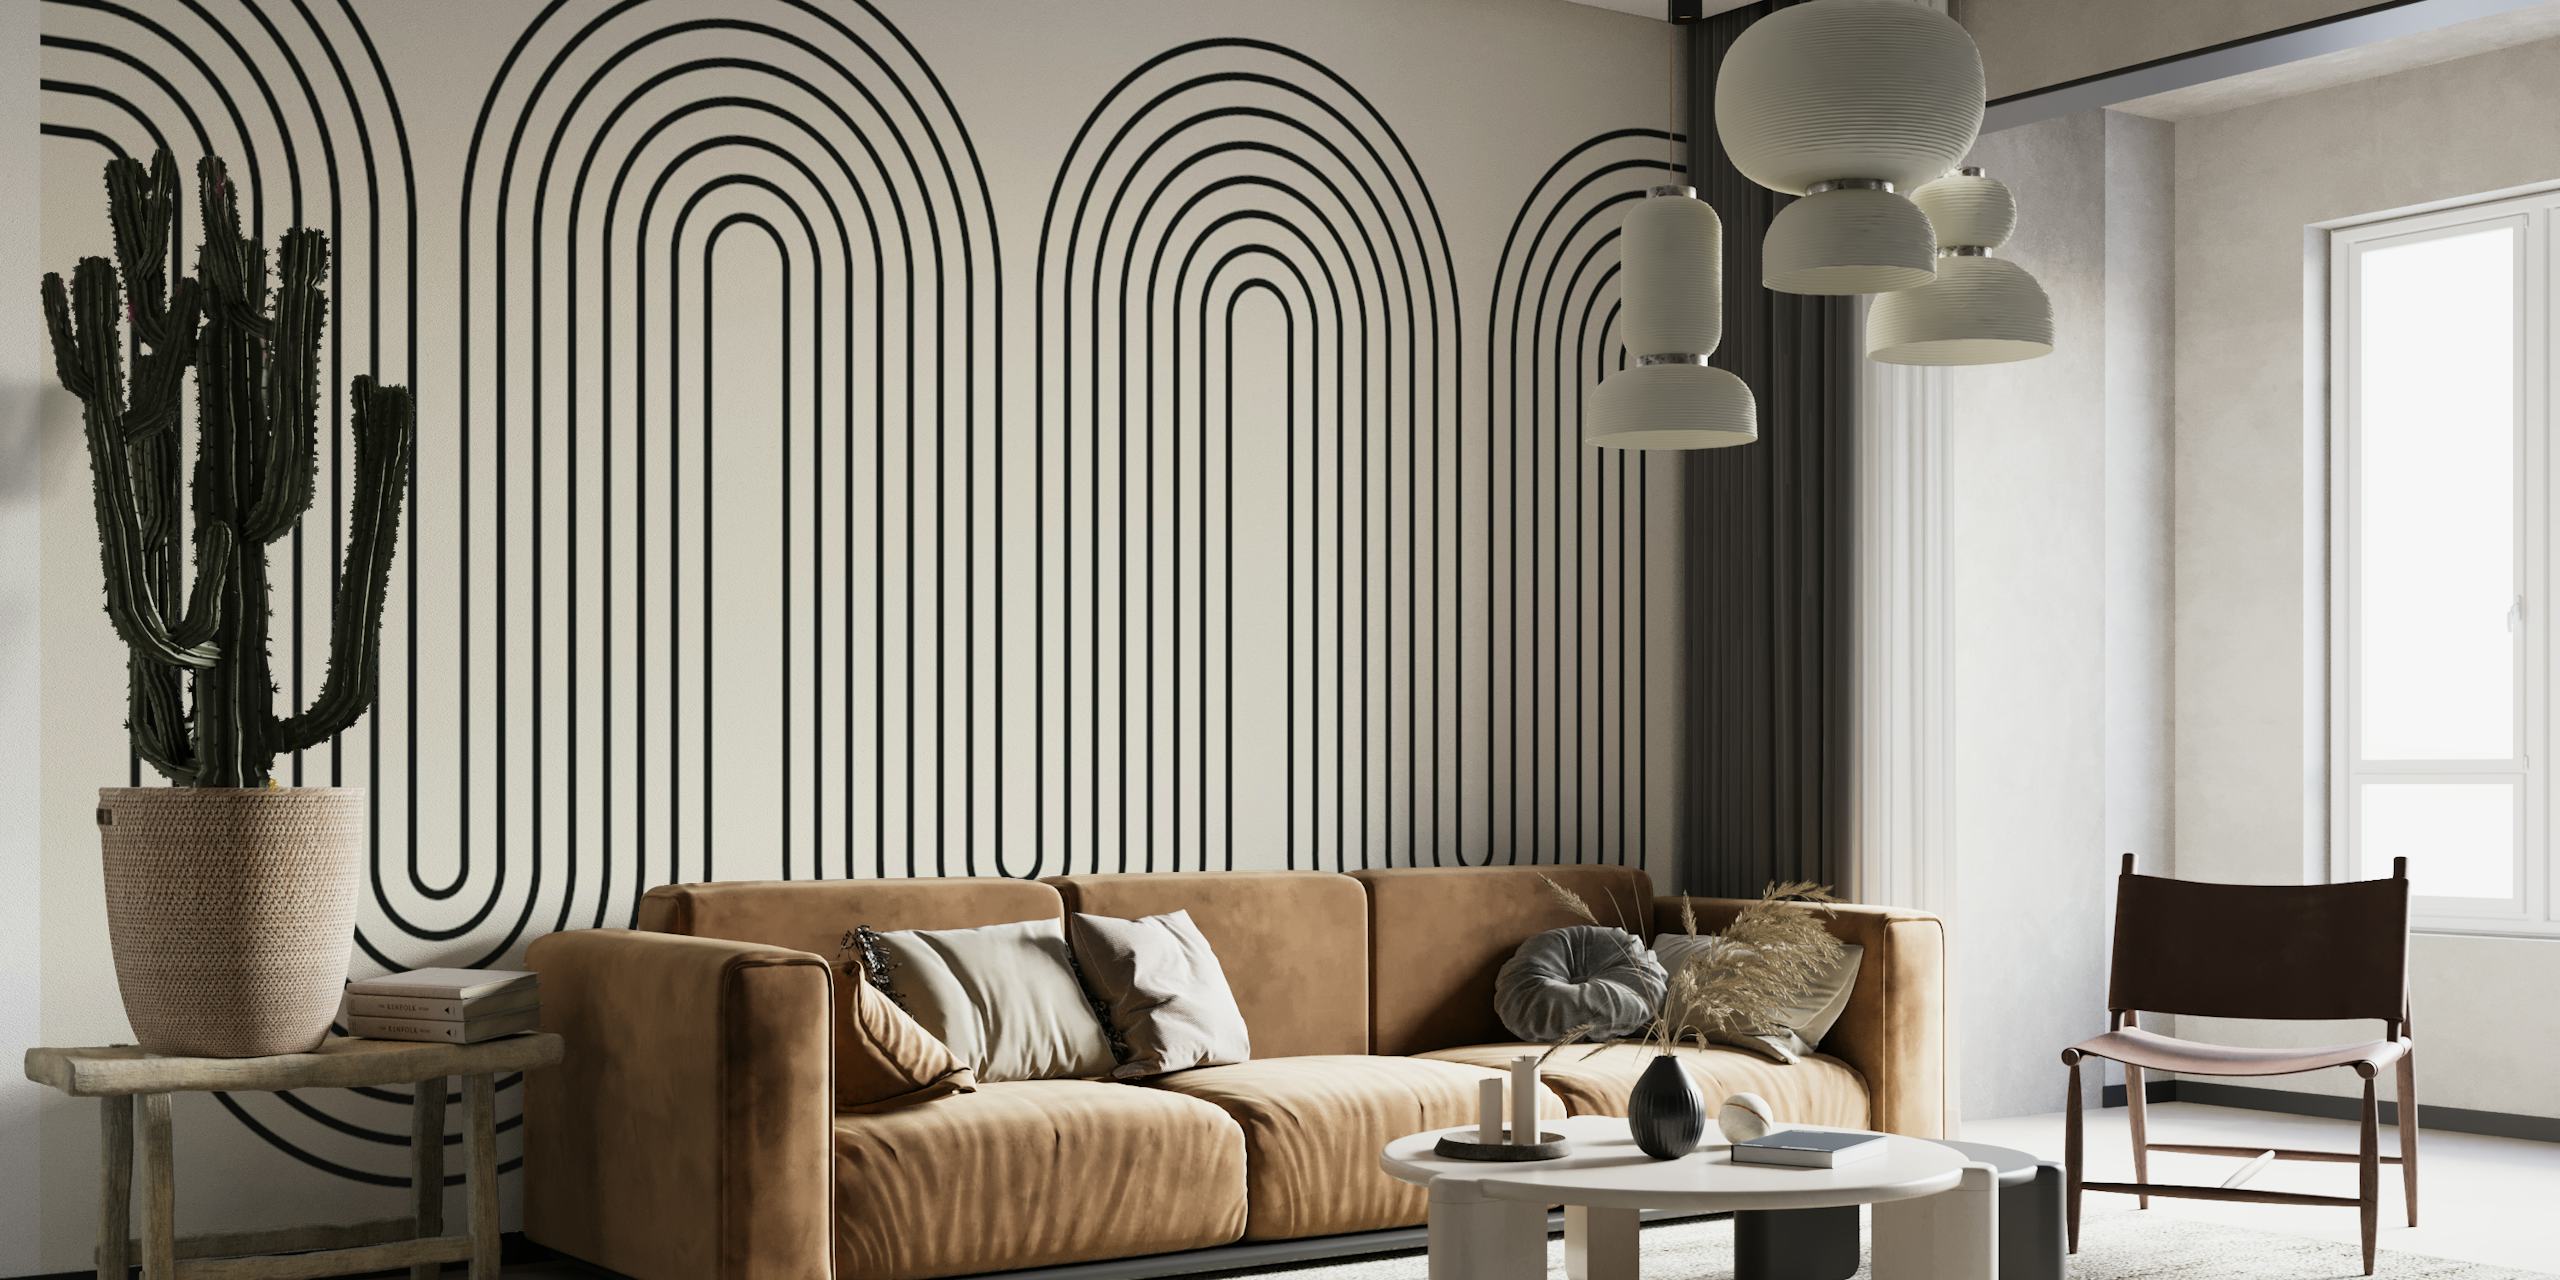 Fotomural moderno minimalista de líneas onduladas en tonos de escala de grises